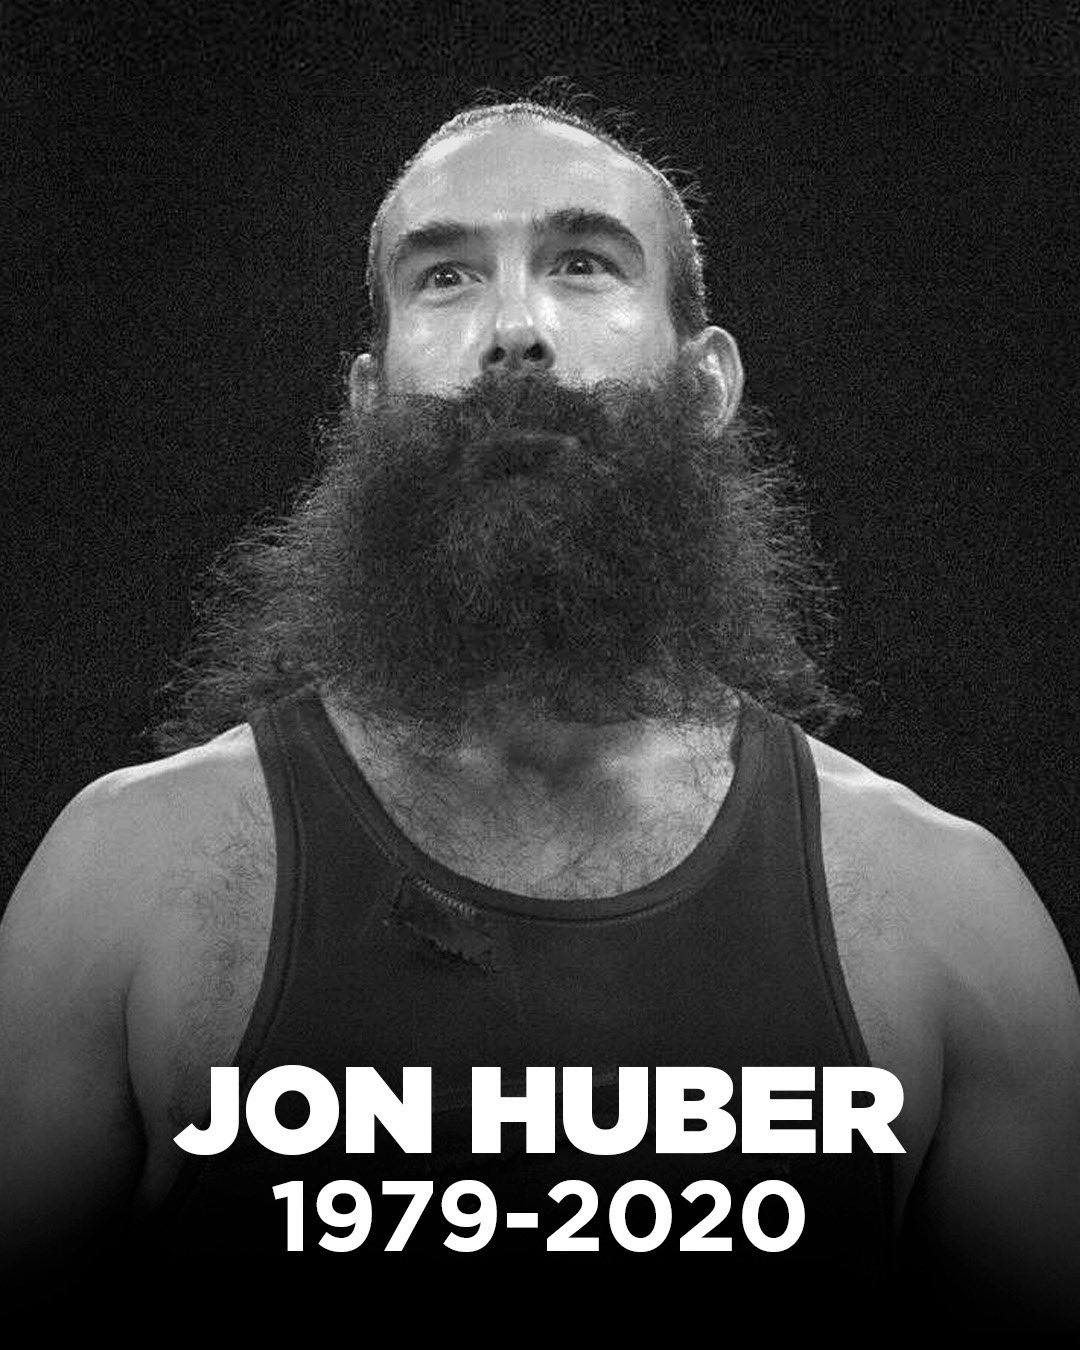 Fallece Jon Huber ex-luchador de AEW y WWE a los 41 años 1